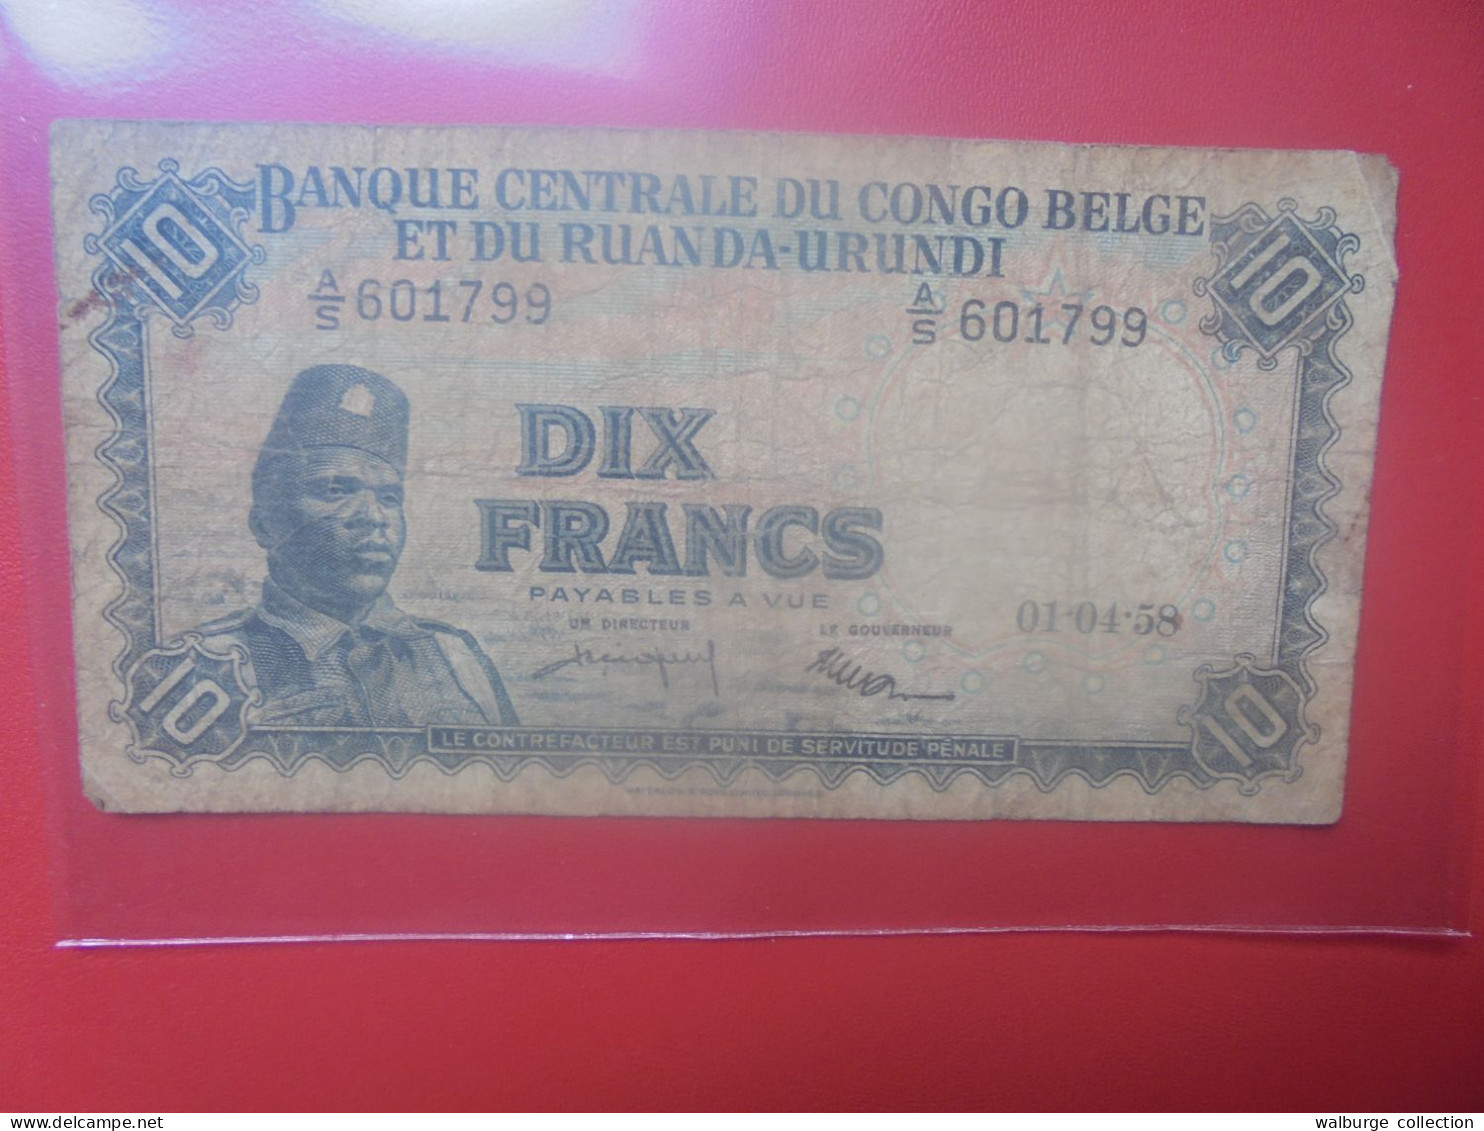 CONGO BELGE 10 FRANCS 1-4-58 Circuler (B.33) - Belgian Congo Bank